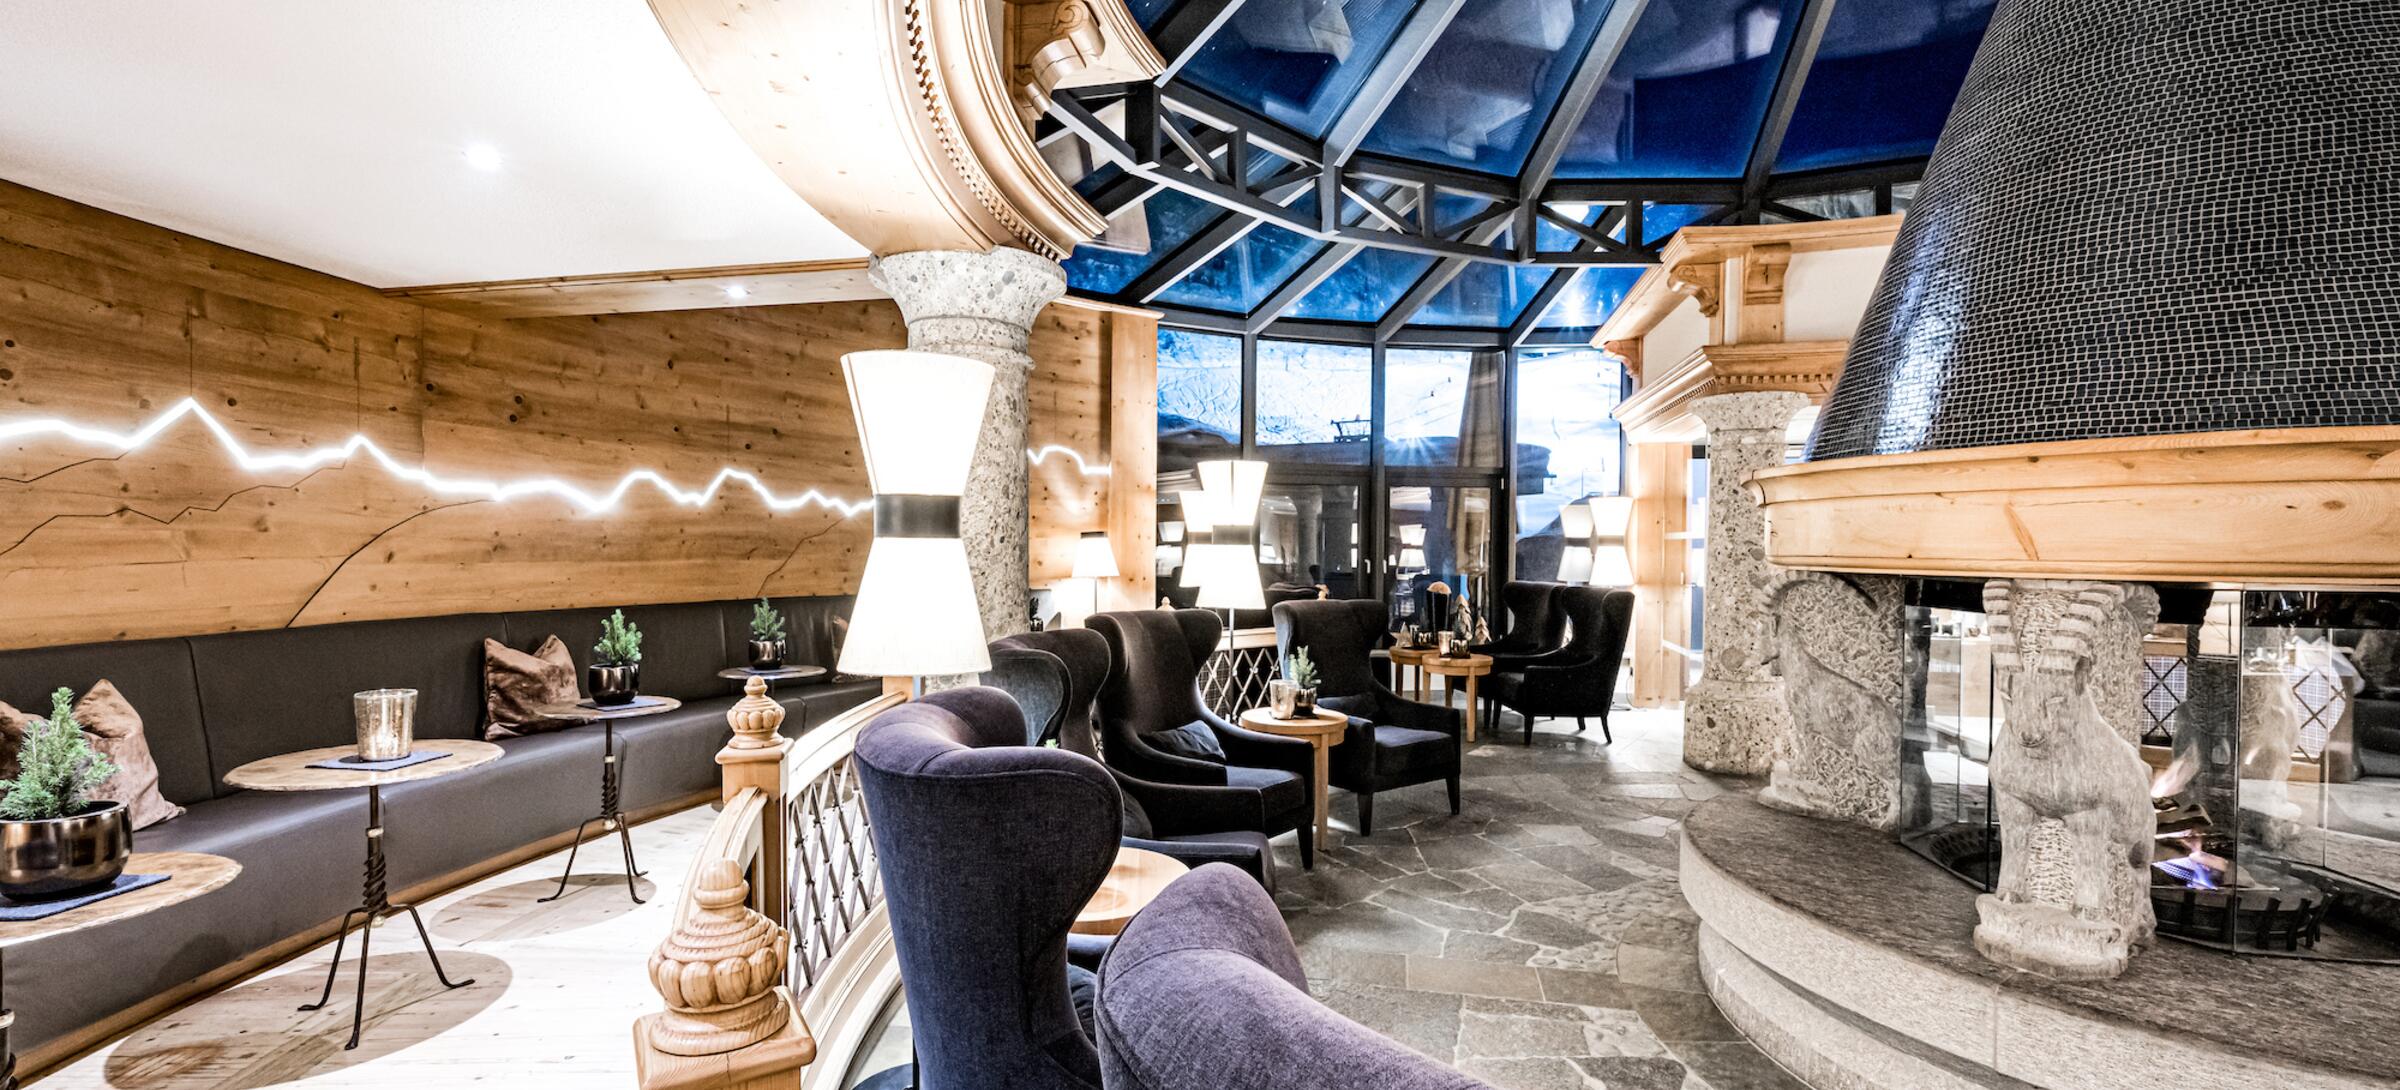 Bar & fireside lounge – 4*S Hotel Edelweiss & Gurgl